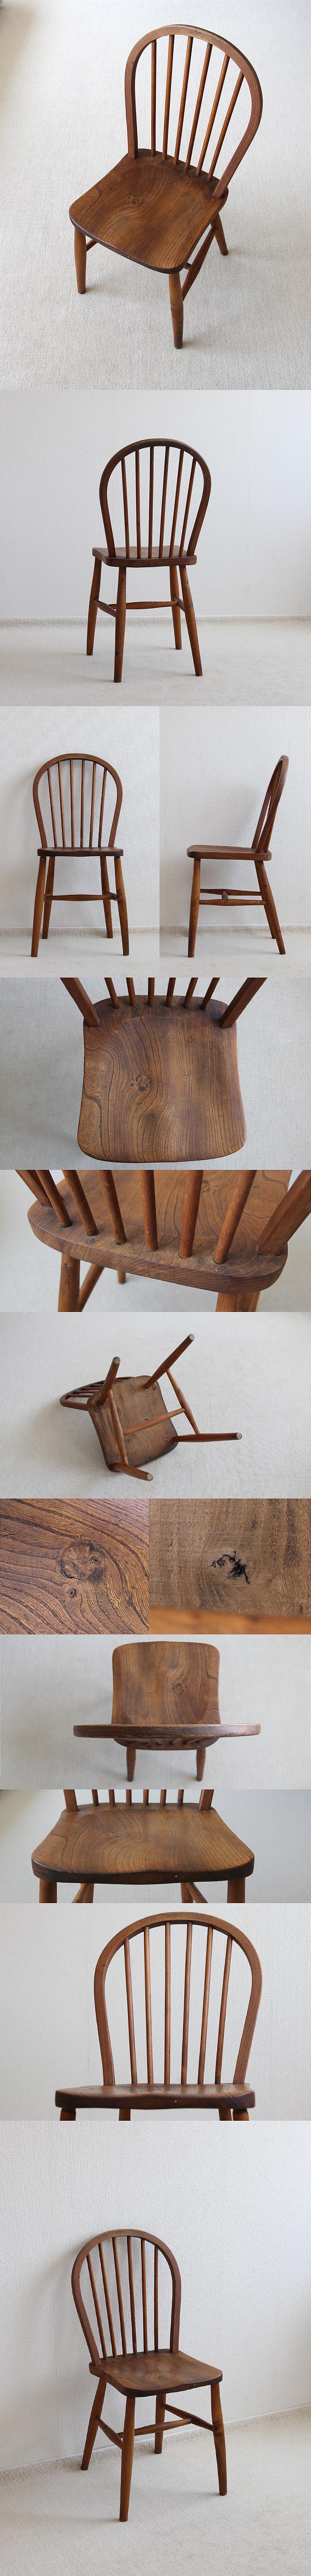 イギリス アンティーク キッチンチェア 英国 木製椅子 家具「フープバックチェア」V-411